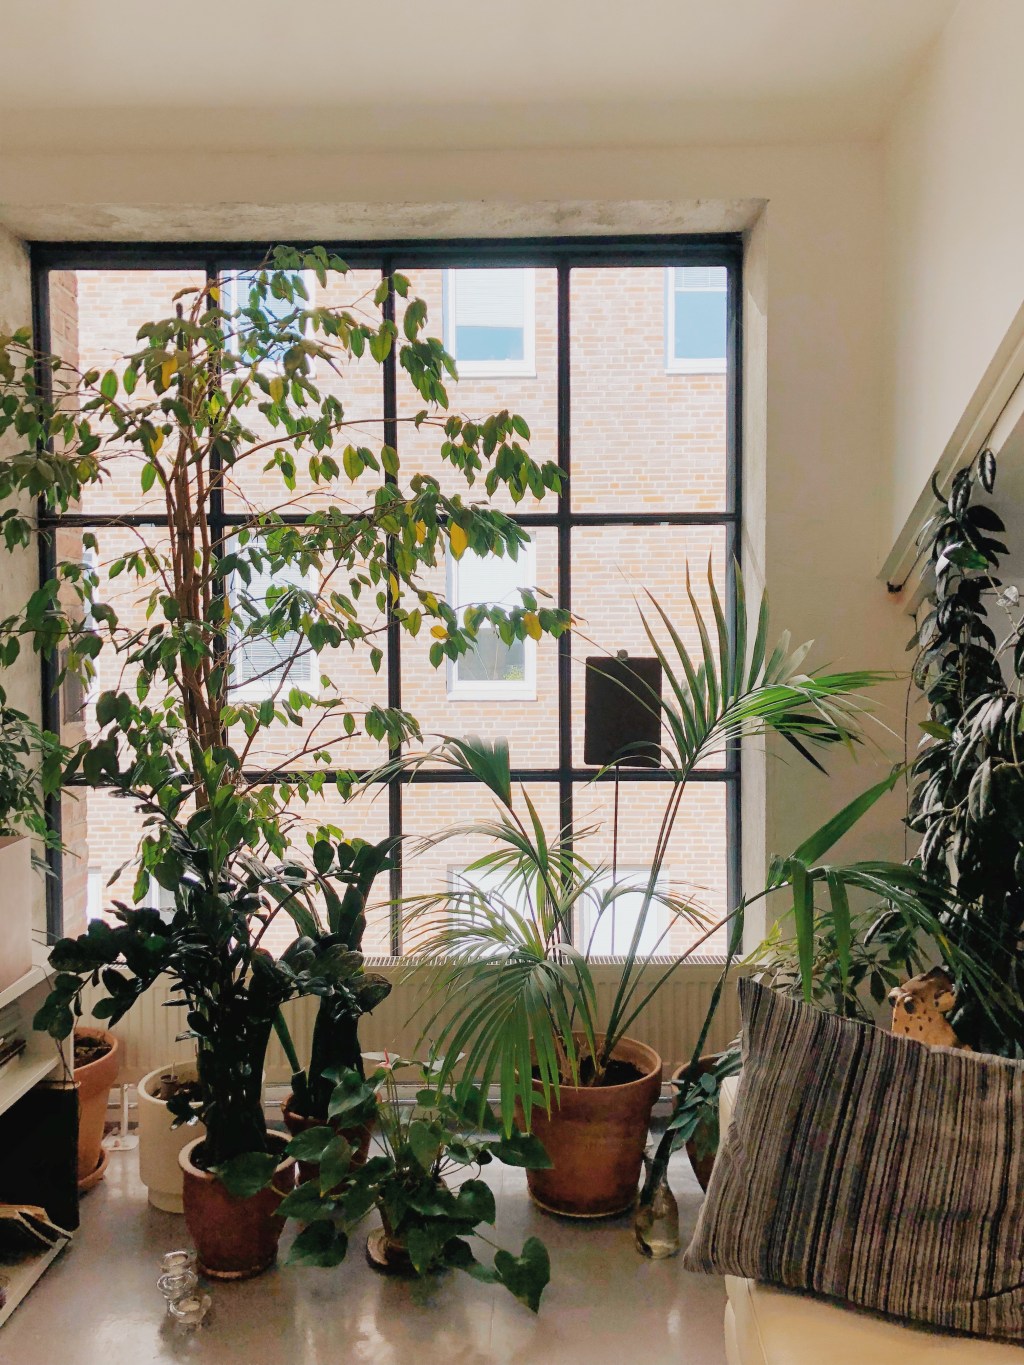 Plantas tropicais em frente à janela